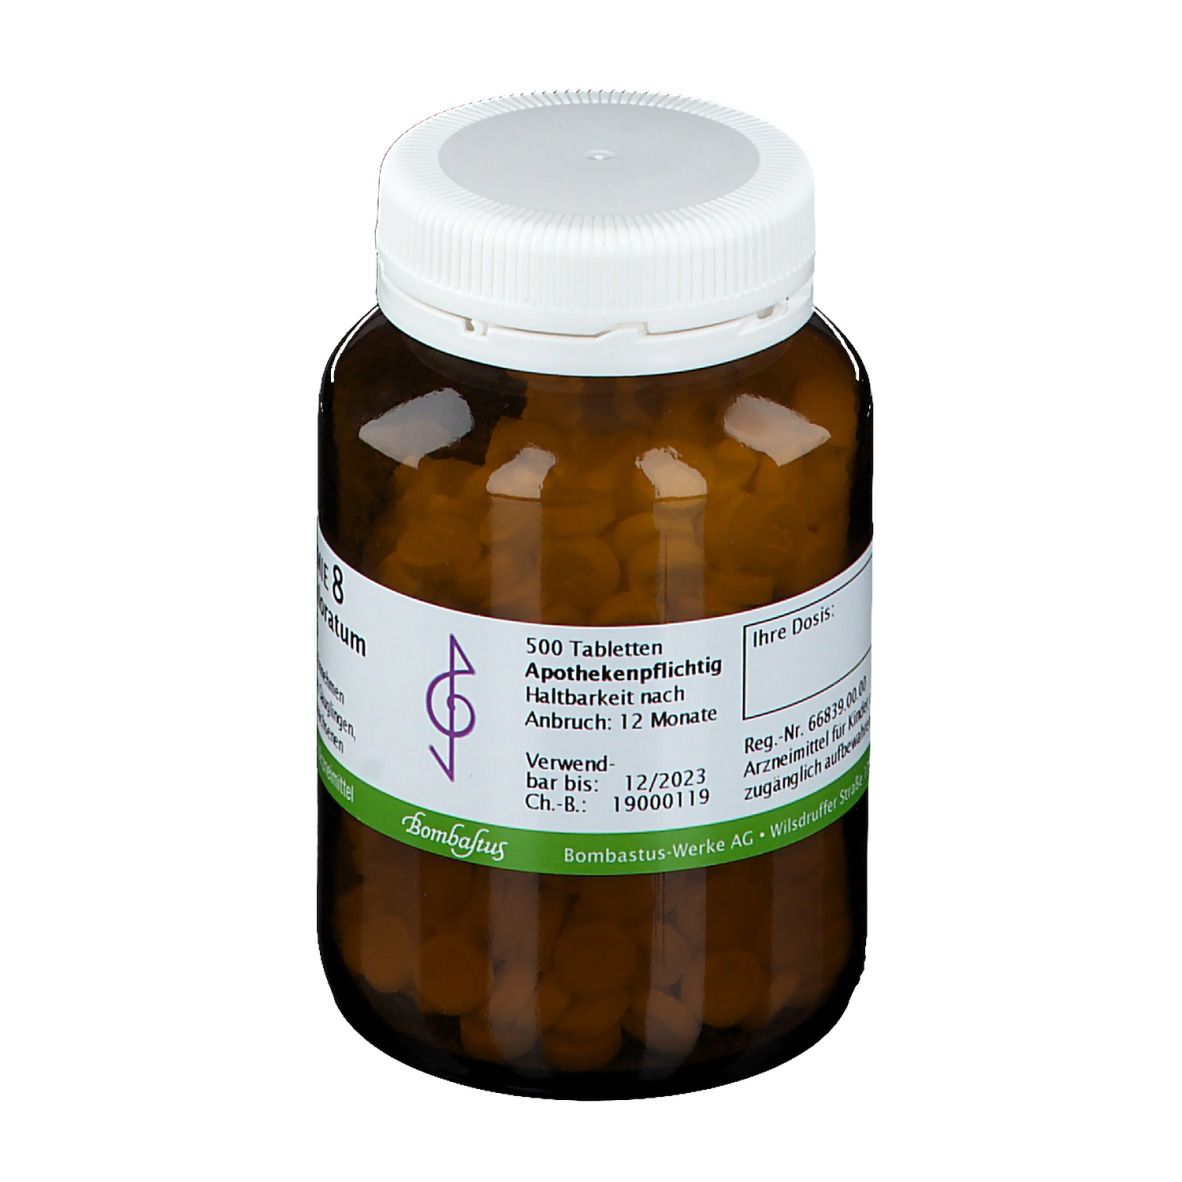 Bombastus Biochemie 8 Natrium chloratum D 6 Tabletten